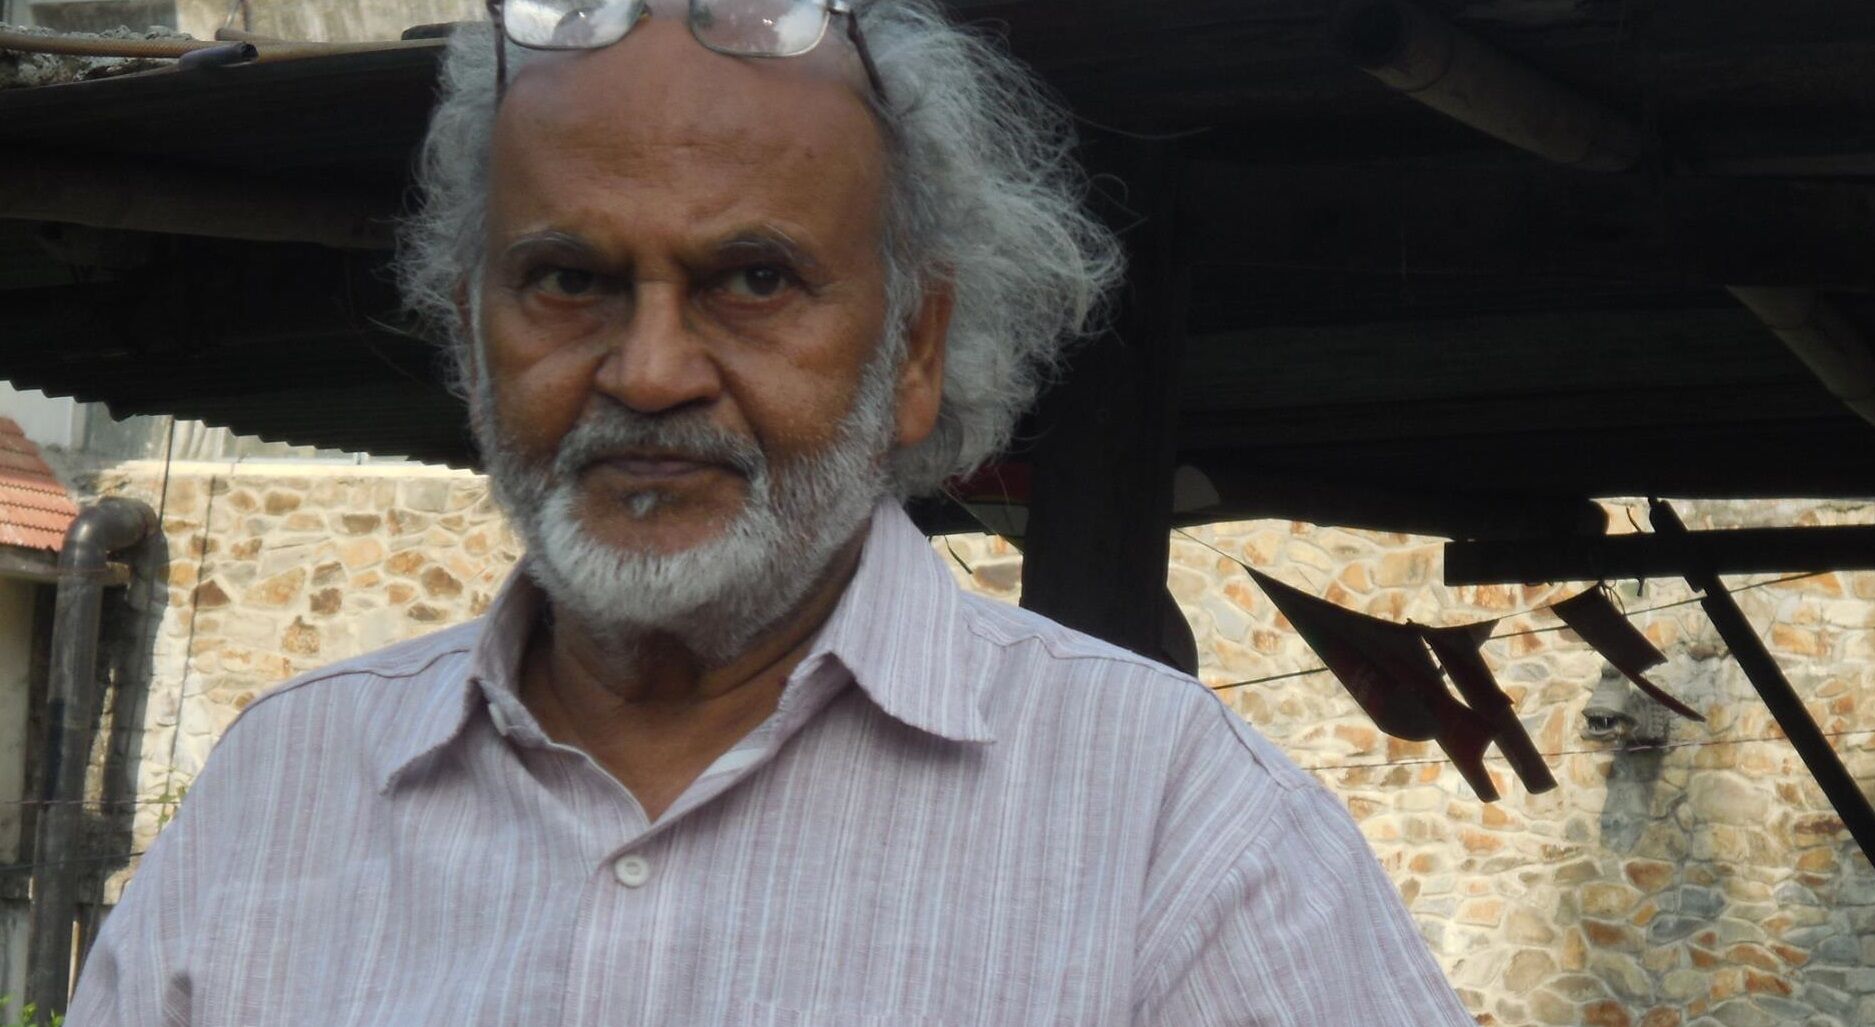 इतिहासकार लाल बहादुर वर्मा का देहरादून में हुआ निधन, हिंदीभाषी समाज की बड़ी क्षति